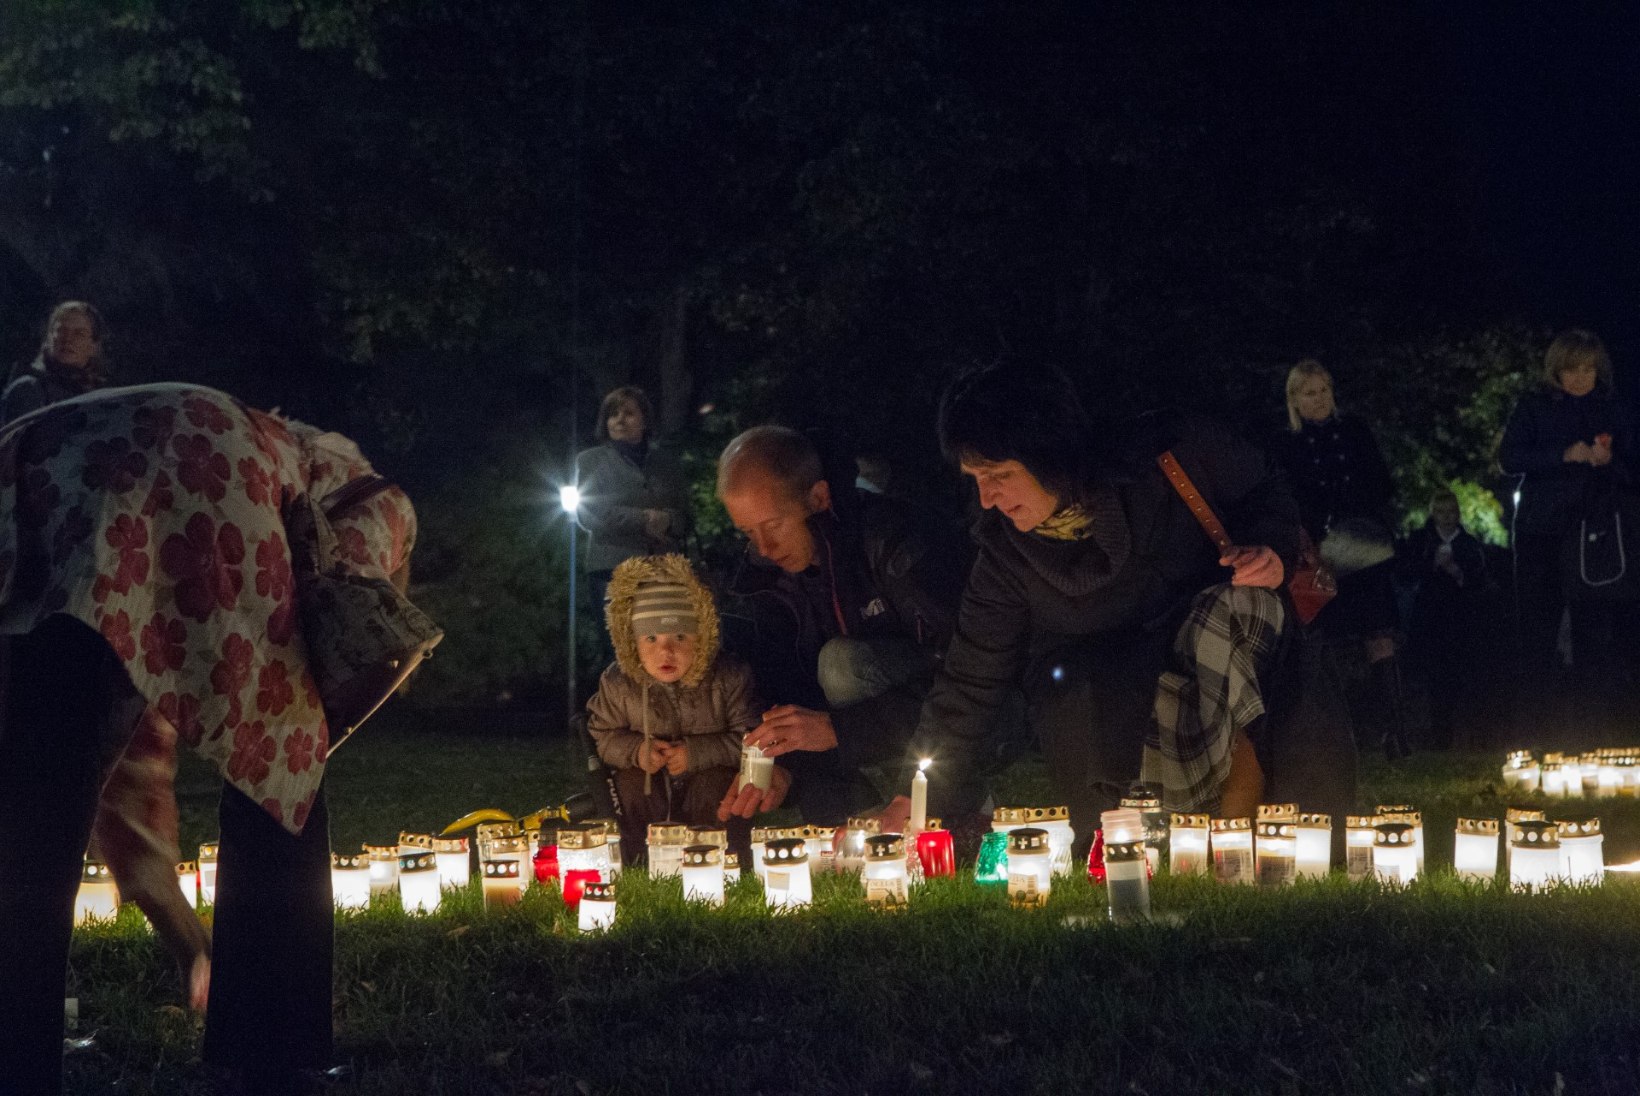 FOTOD: Jaak Joala mälestuseks süüdati Harjumäel sajad küünlad